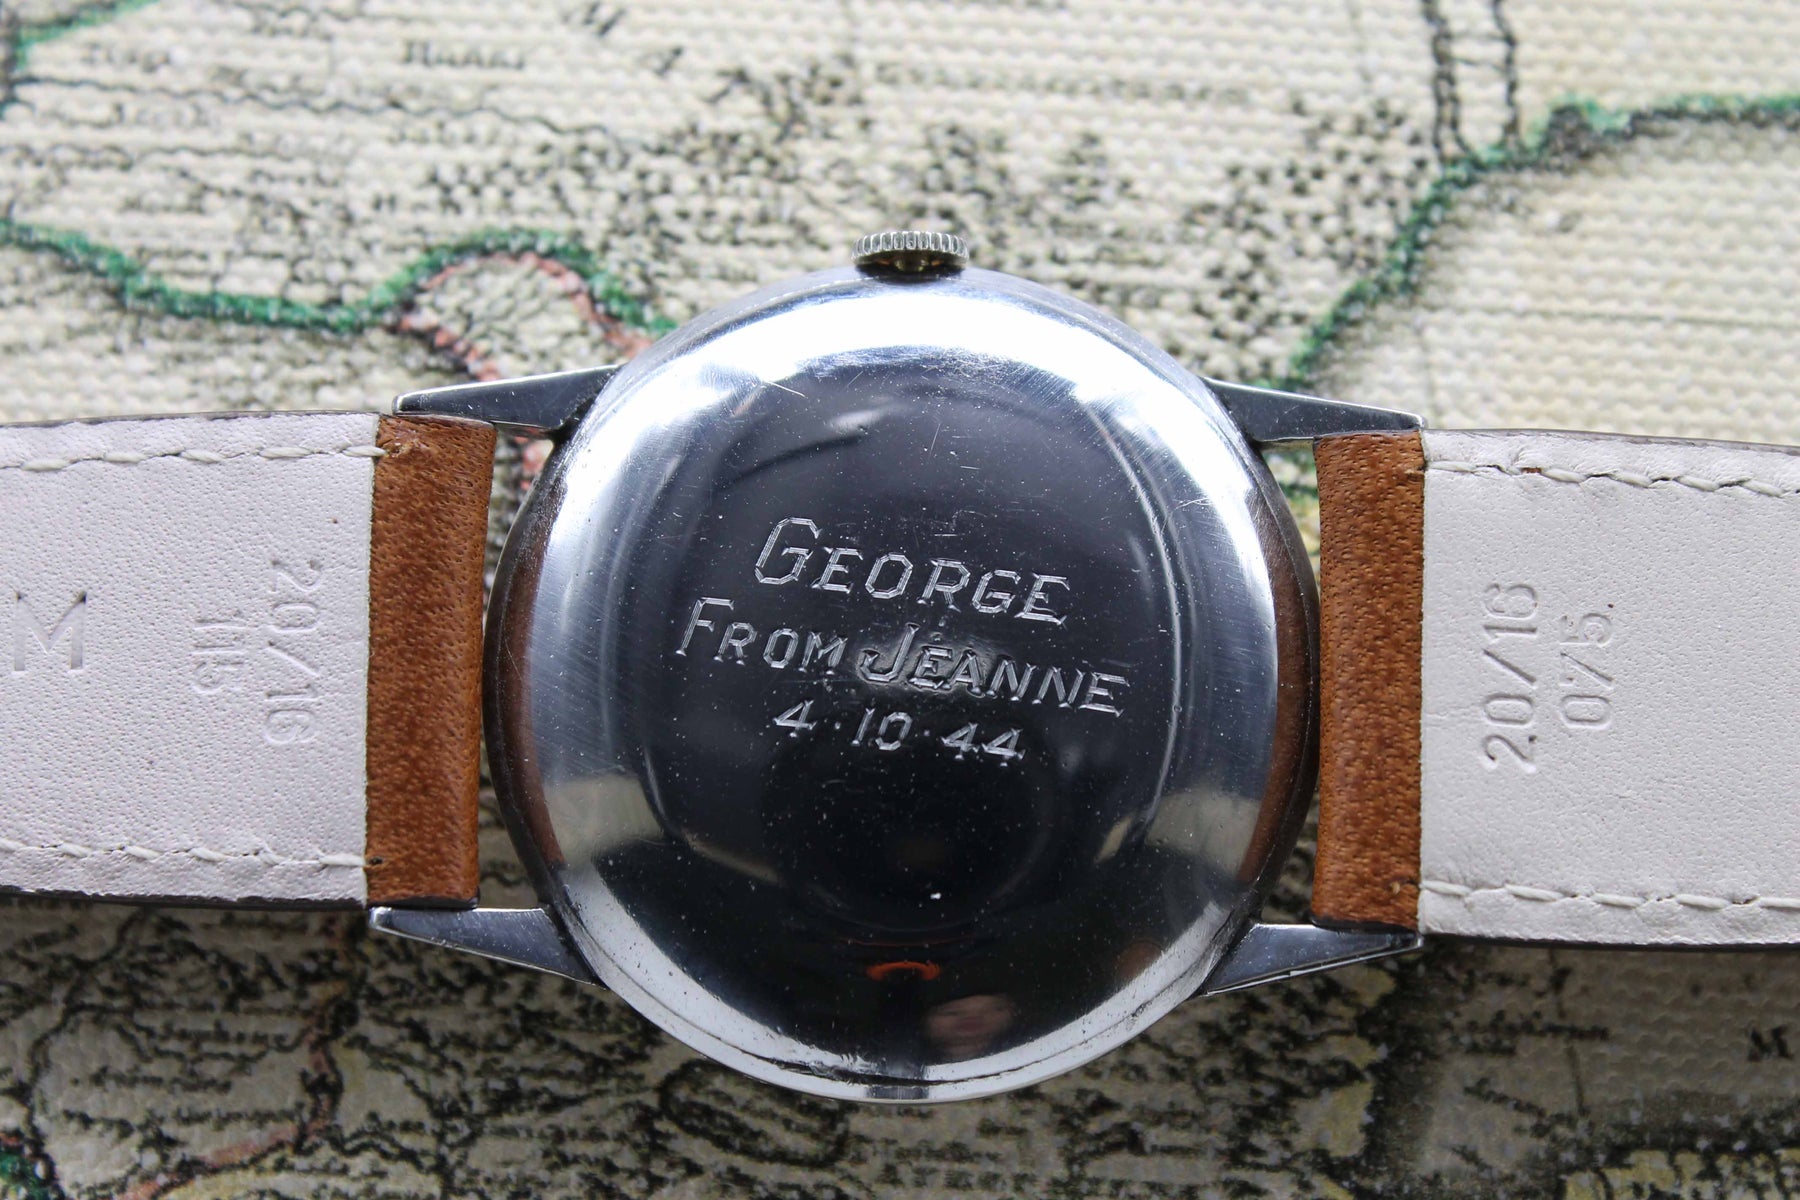 1944 Rolex Dresswatch Ref. 3660